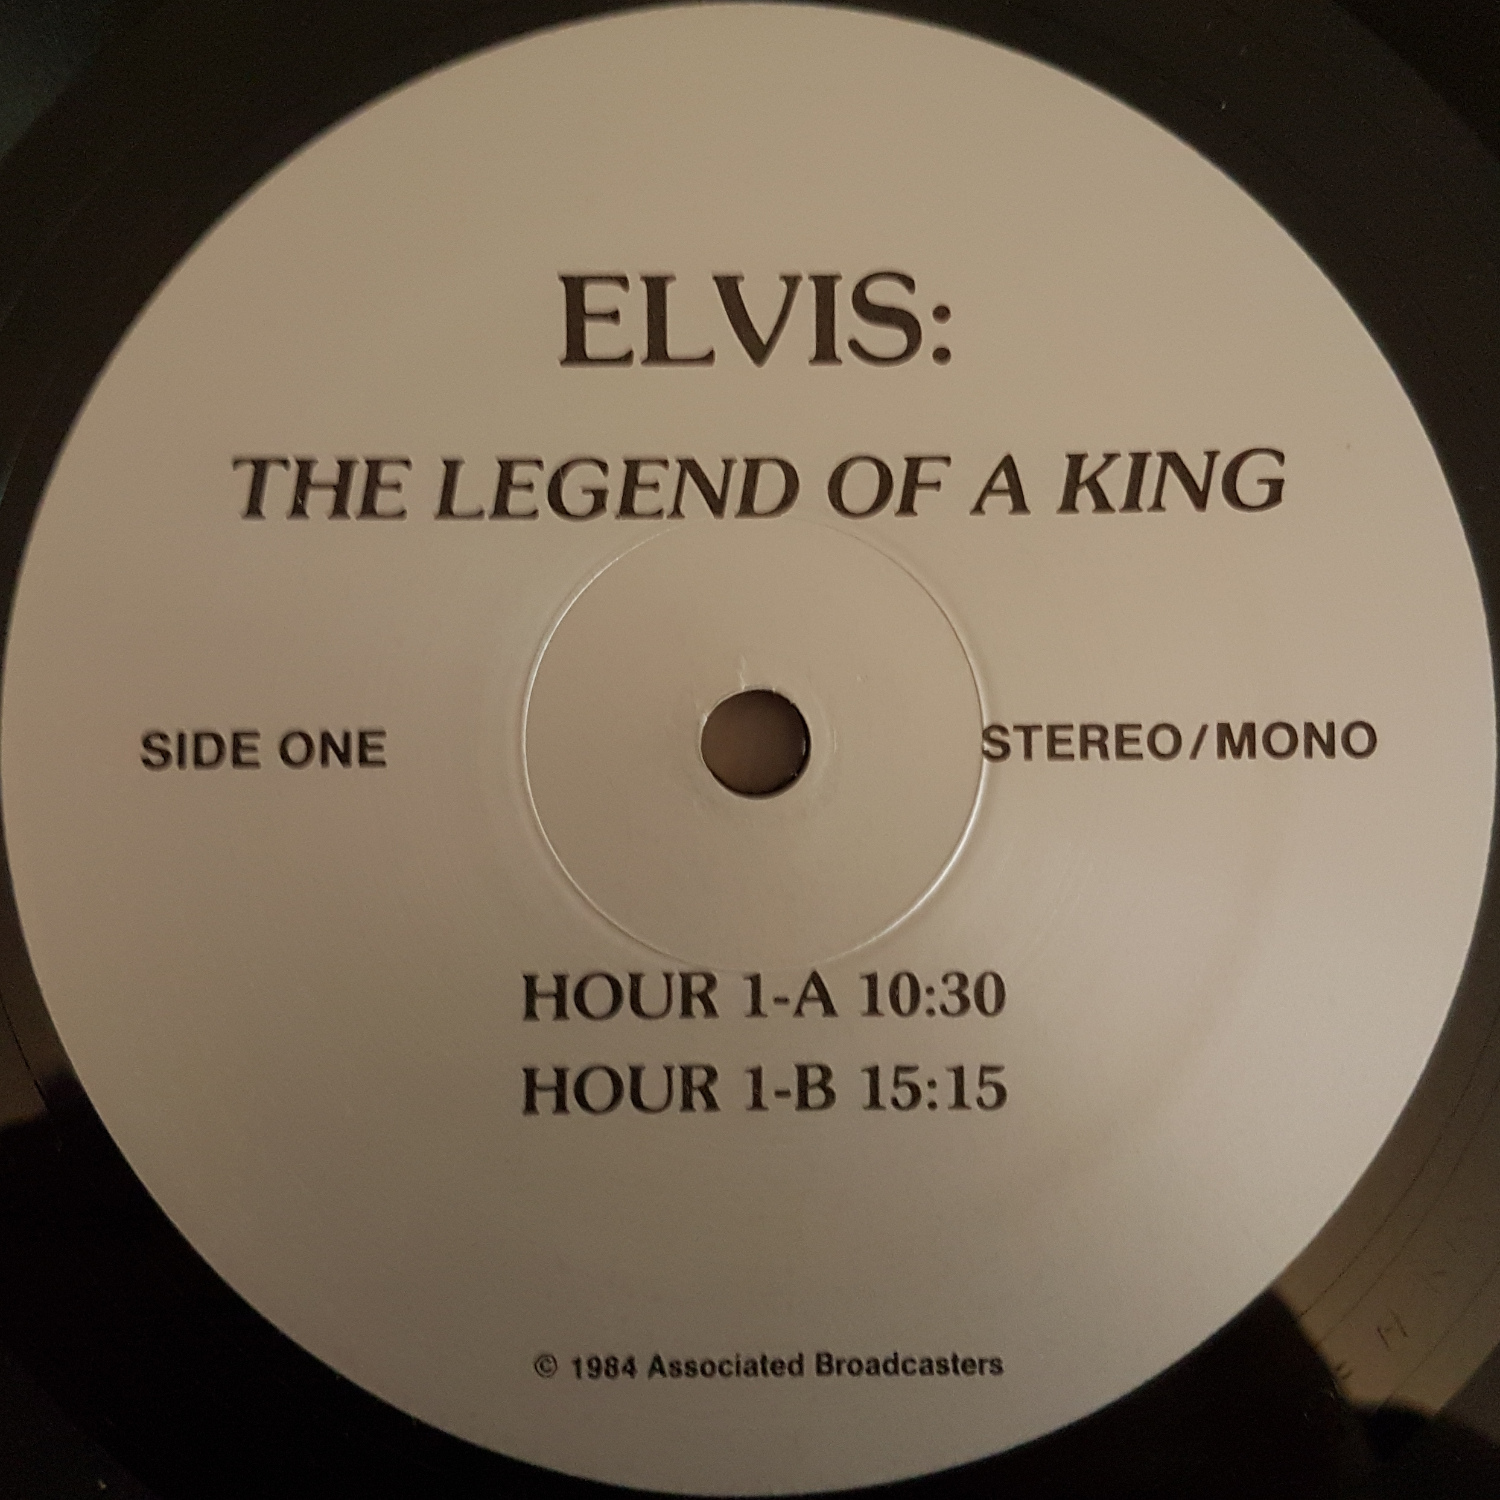 JOHN LEADER - ELVIS THE LEGEND OF A KING (3 Hour Broadcast) Legendofakingrb5raknm